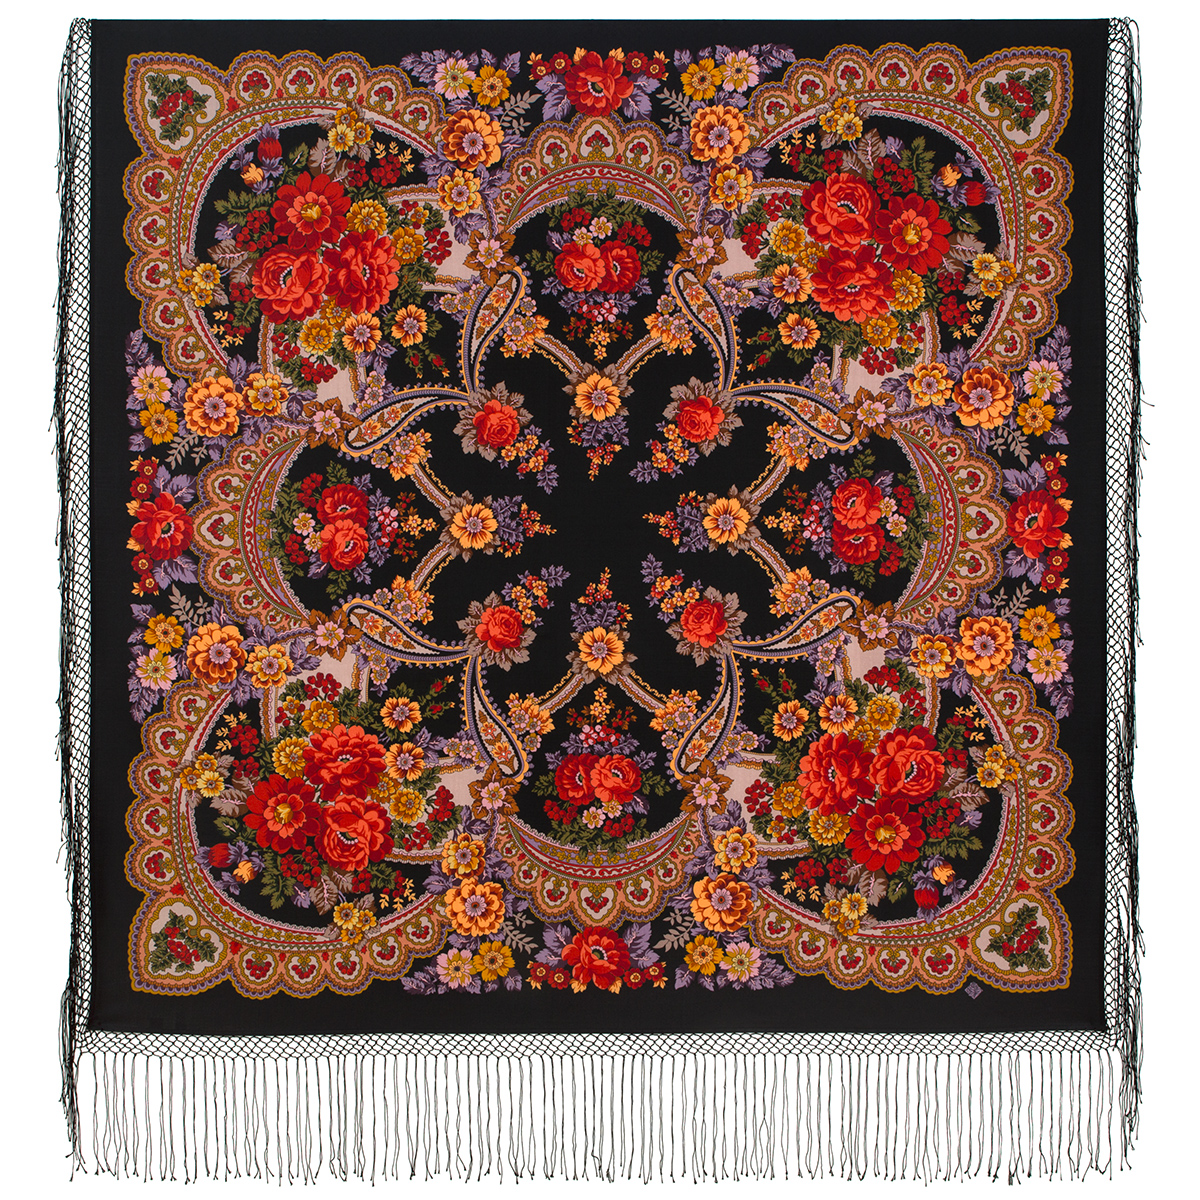 Платок женский Павловопосадский платок 708 черный/красный, 148х148 см